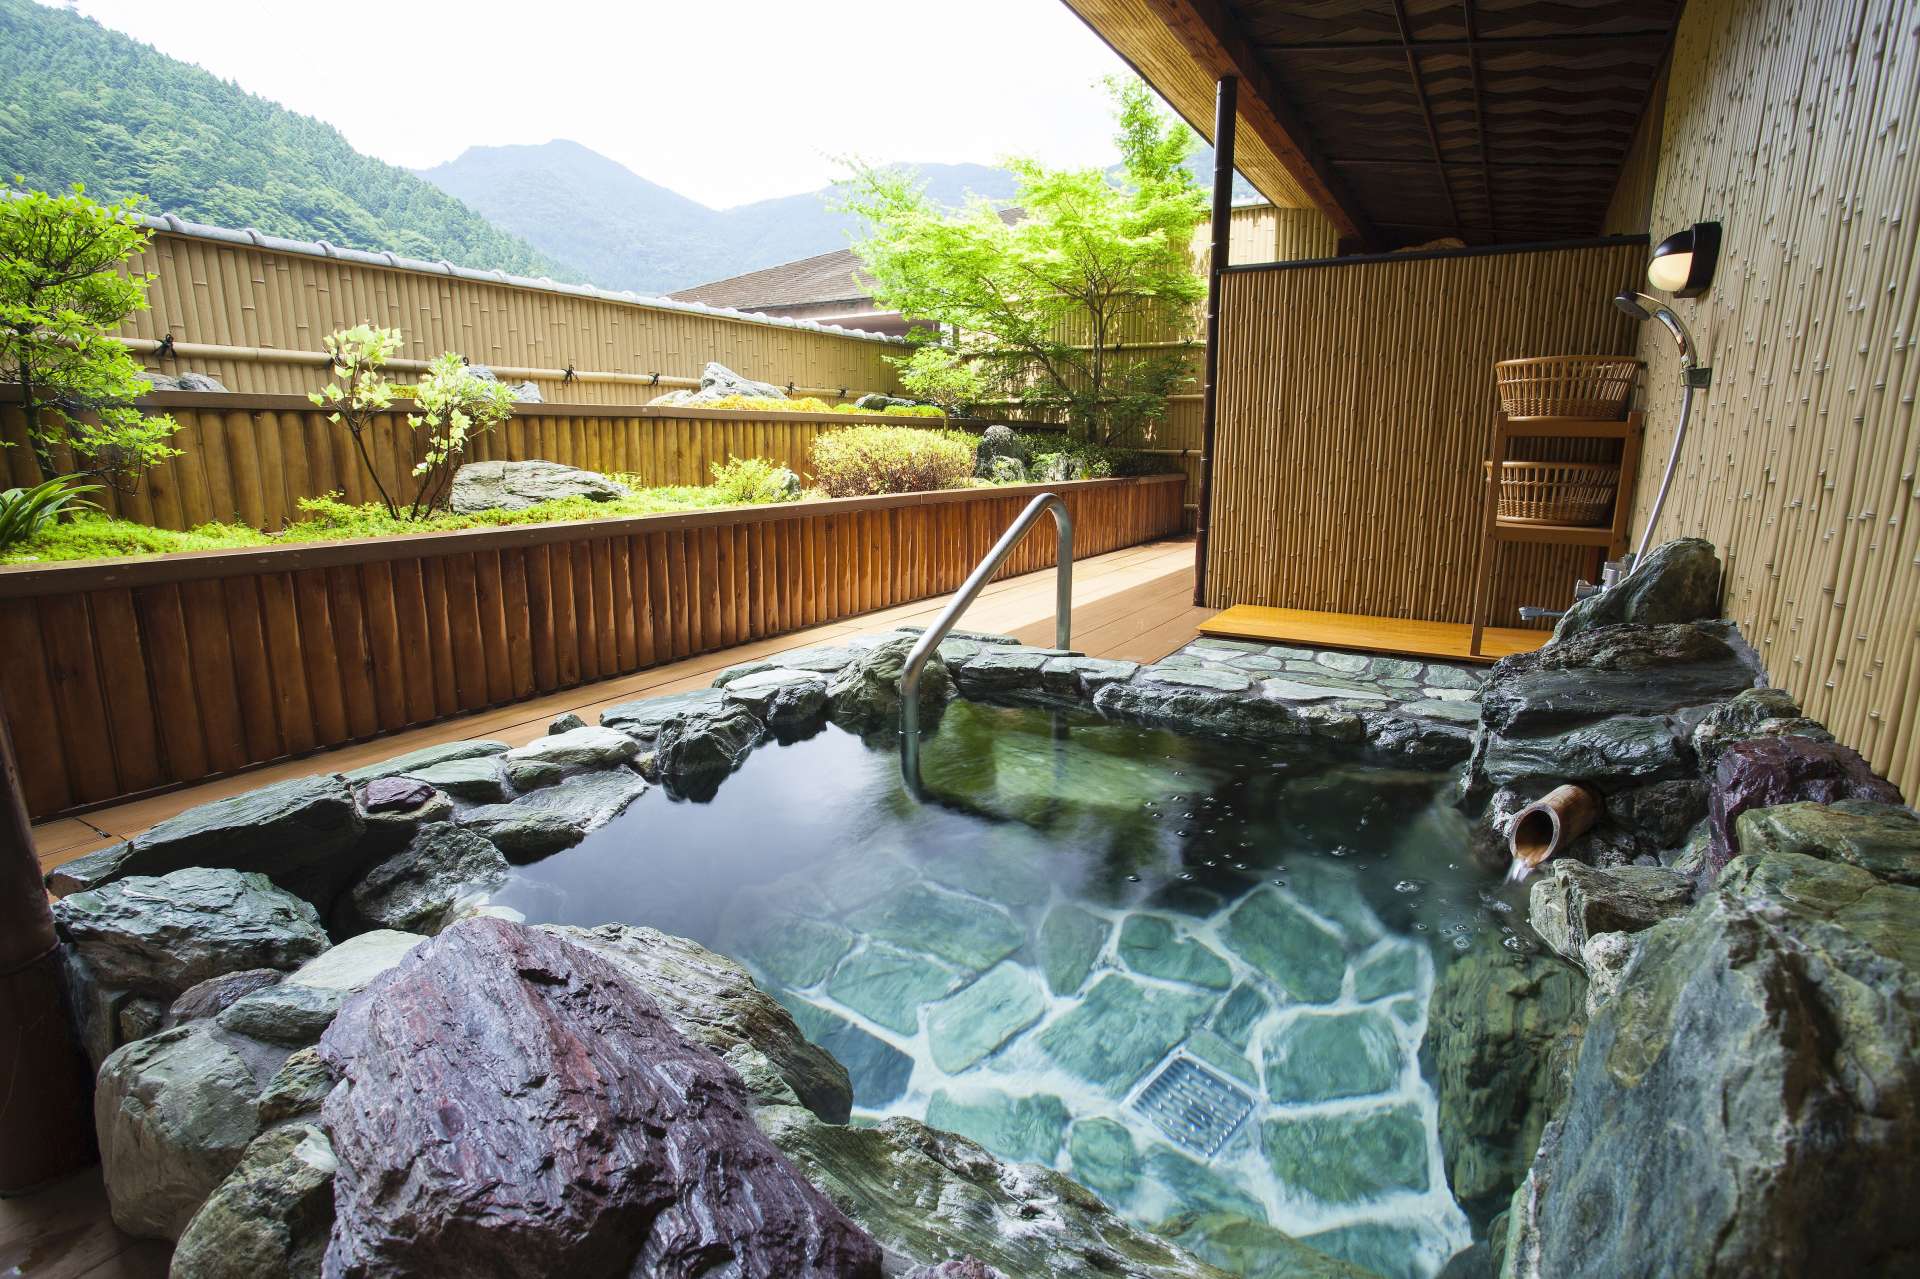 祖谷の青石造りの露天風呂から、日本庭園と山々が織りなす自然美を見上げて。